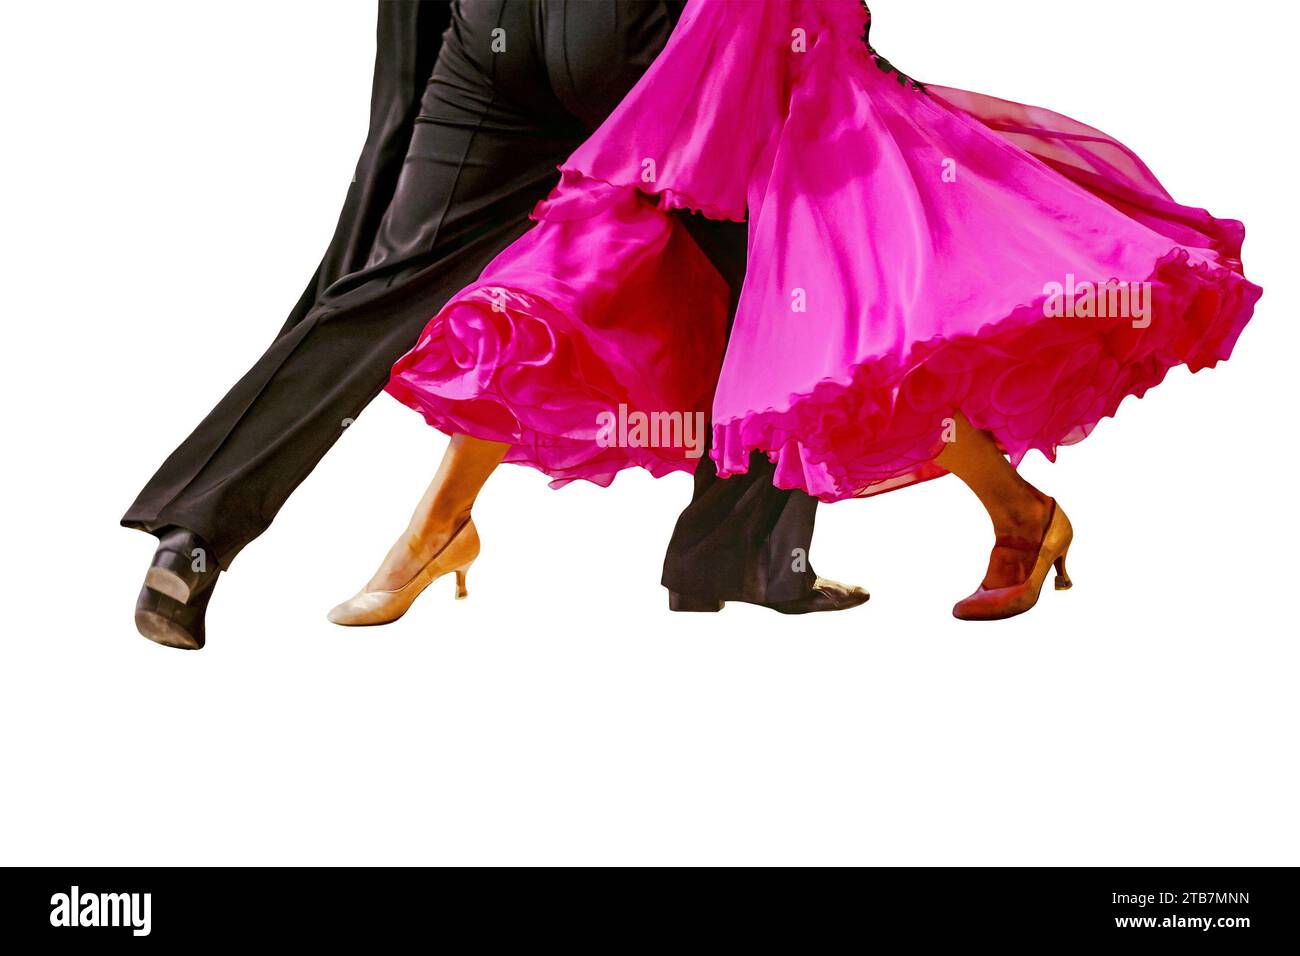 Nahaufnahme Teil rosa Ballkleid und Mann schwarzer Schwanz Anzug auf Tanzboden isoliert auf weißem Hintergrund Stockfoto